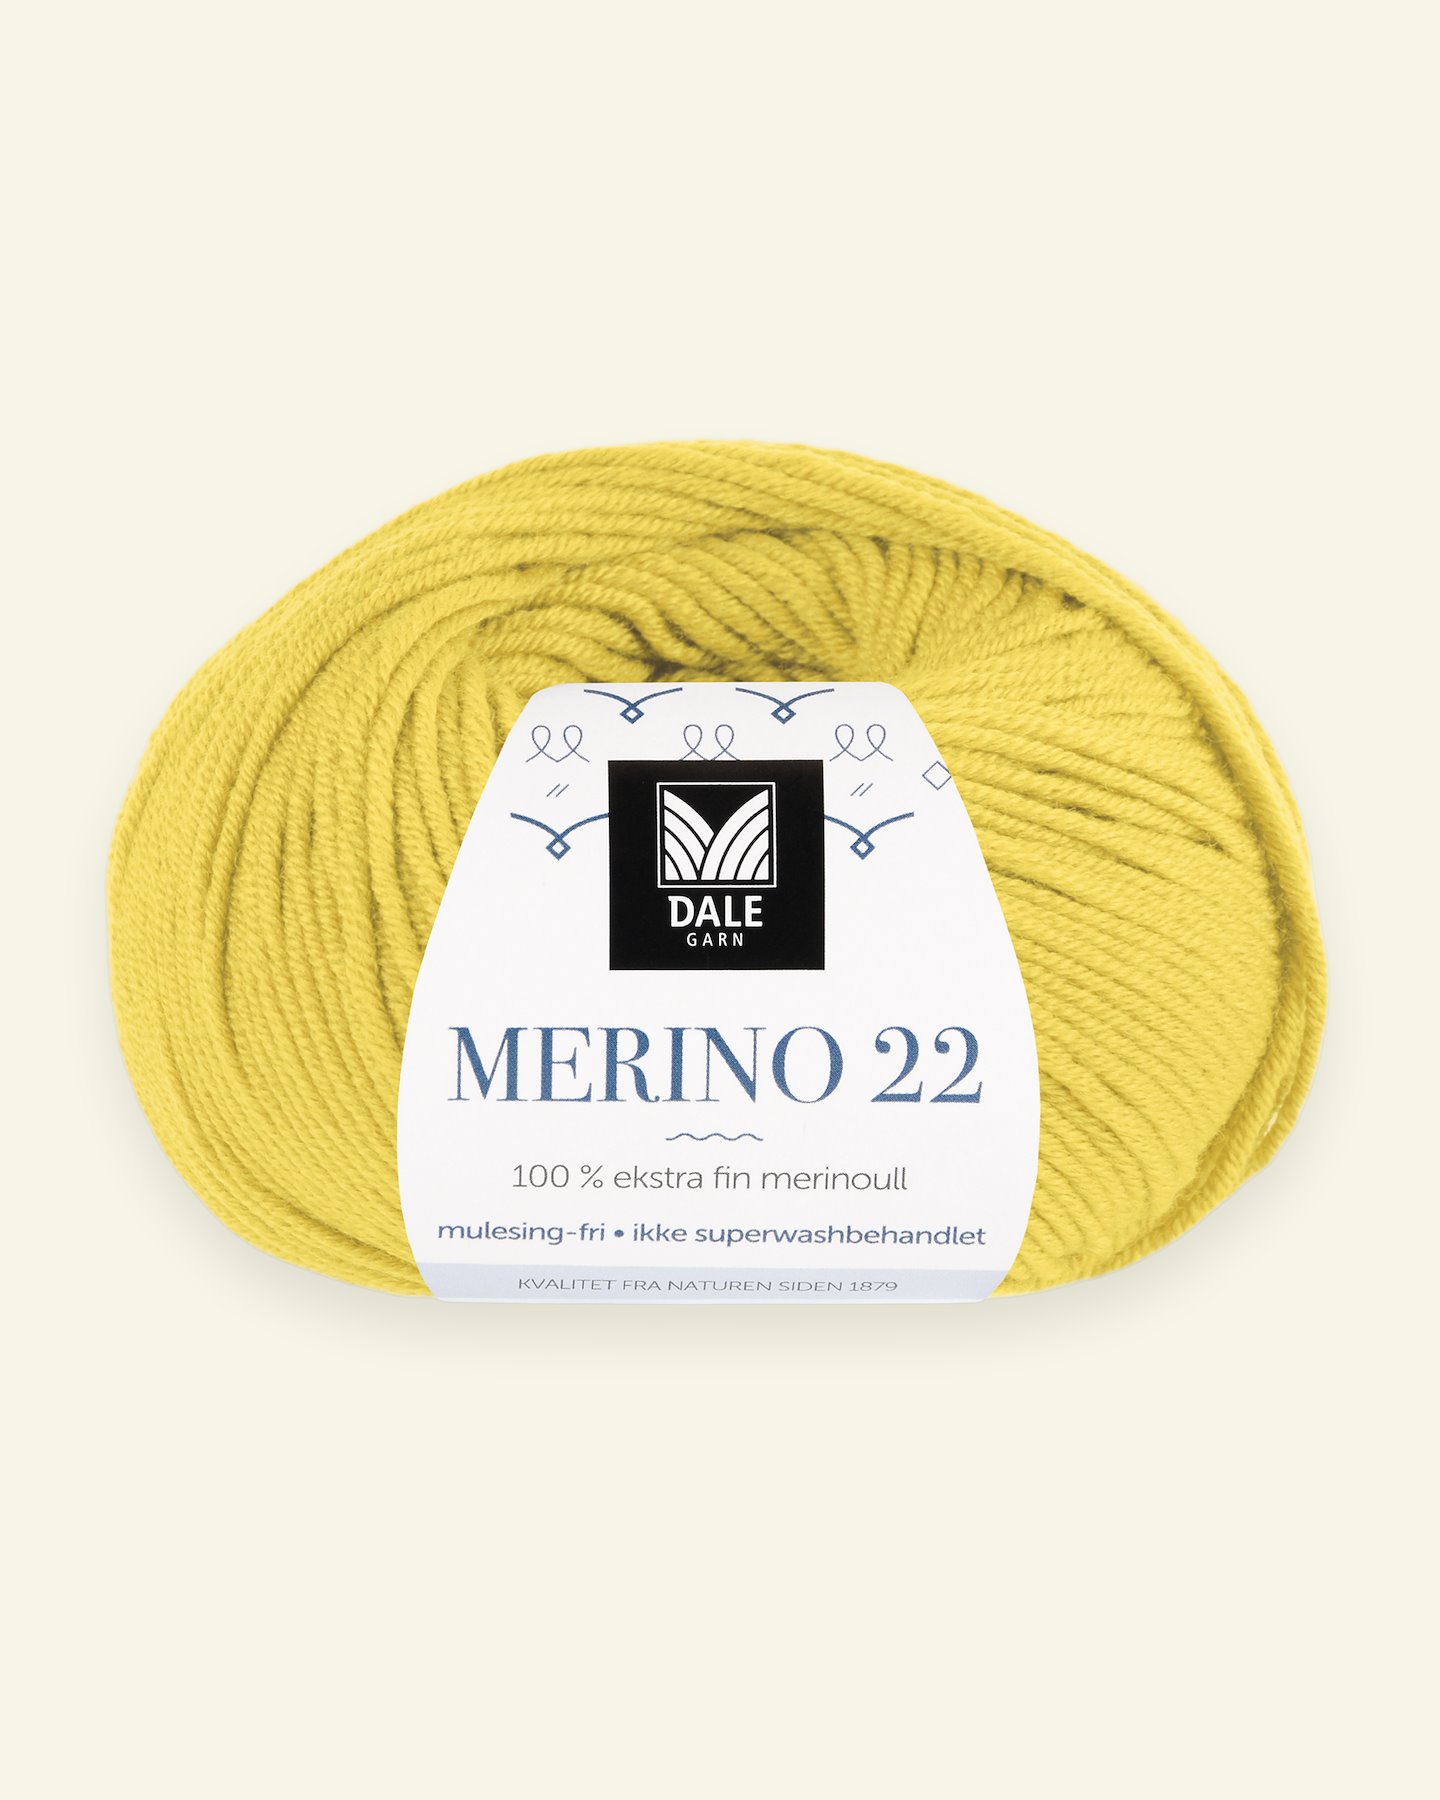 Dale Garn, 100% extra fine merino wool yarn, "Merino 22", yellow 90000391_pack